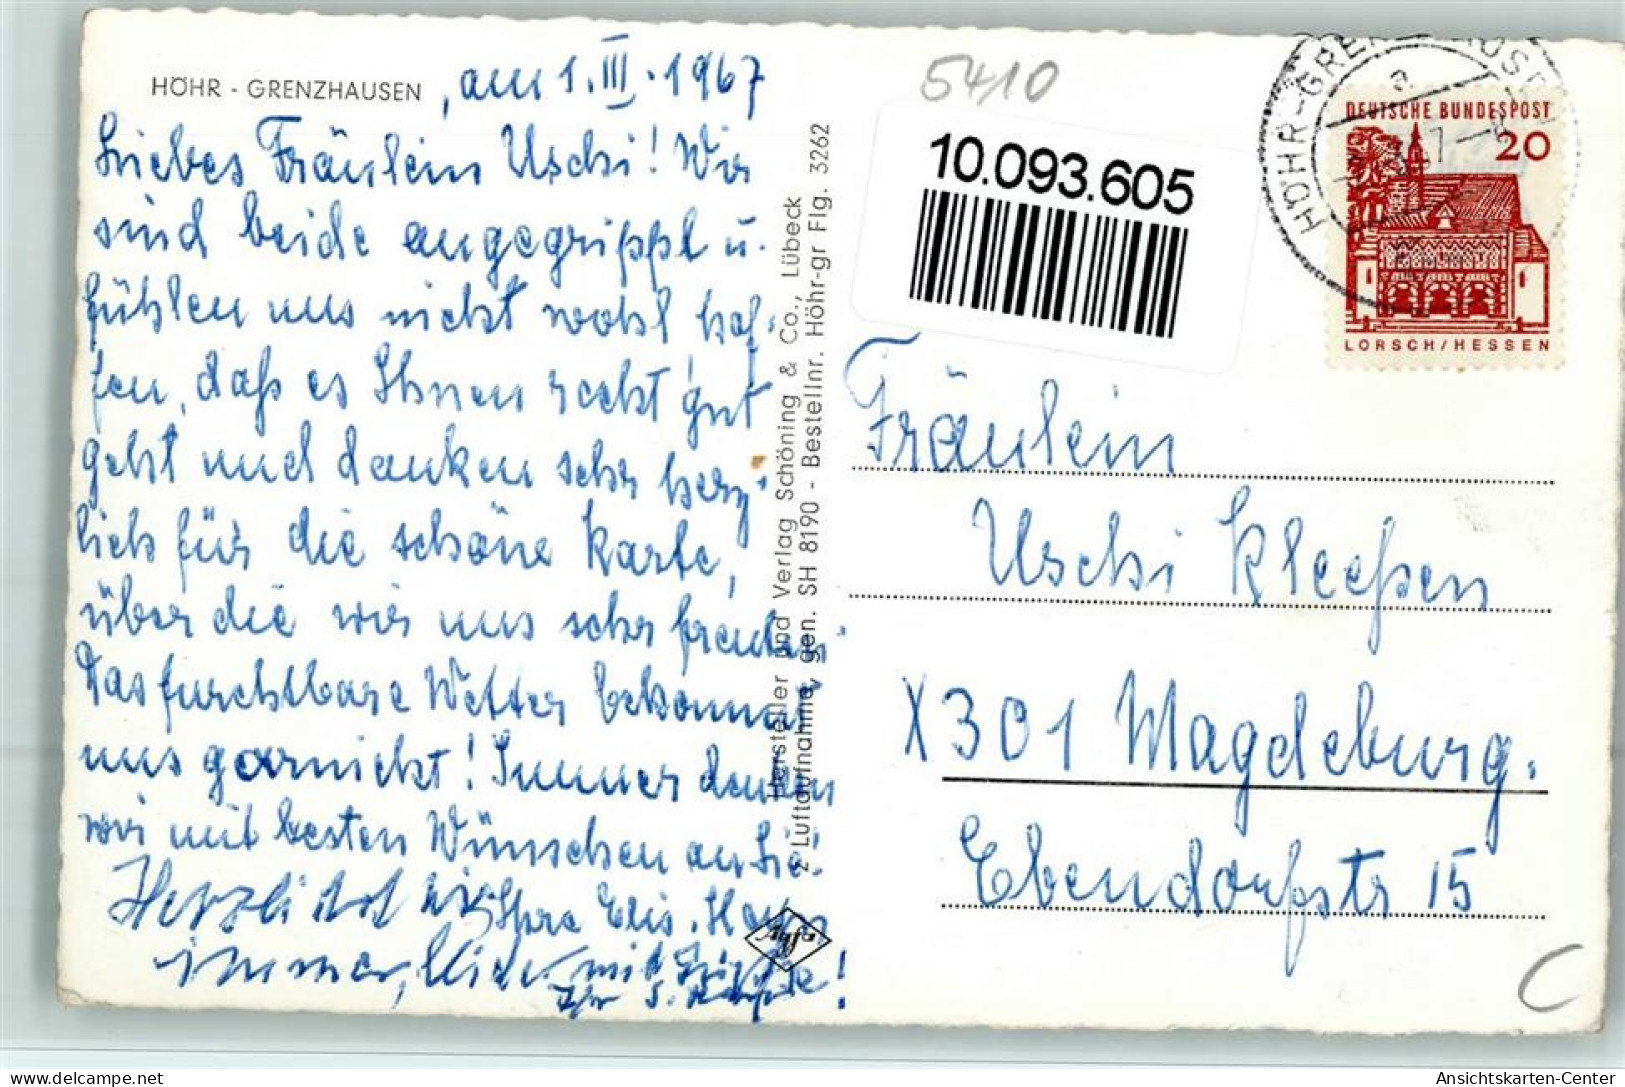 10093605 - Hoehr-Grenzhausen - Hoehr-Grenzhausen